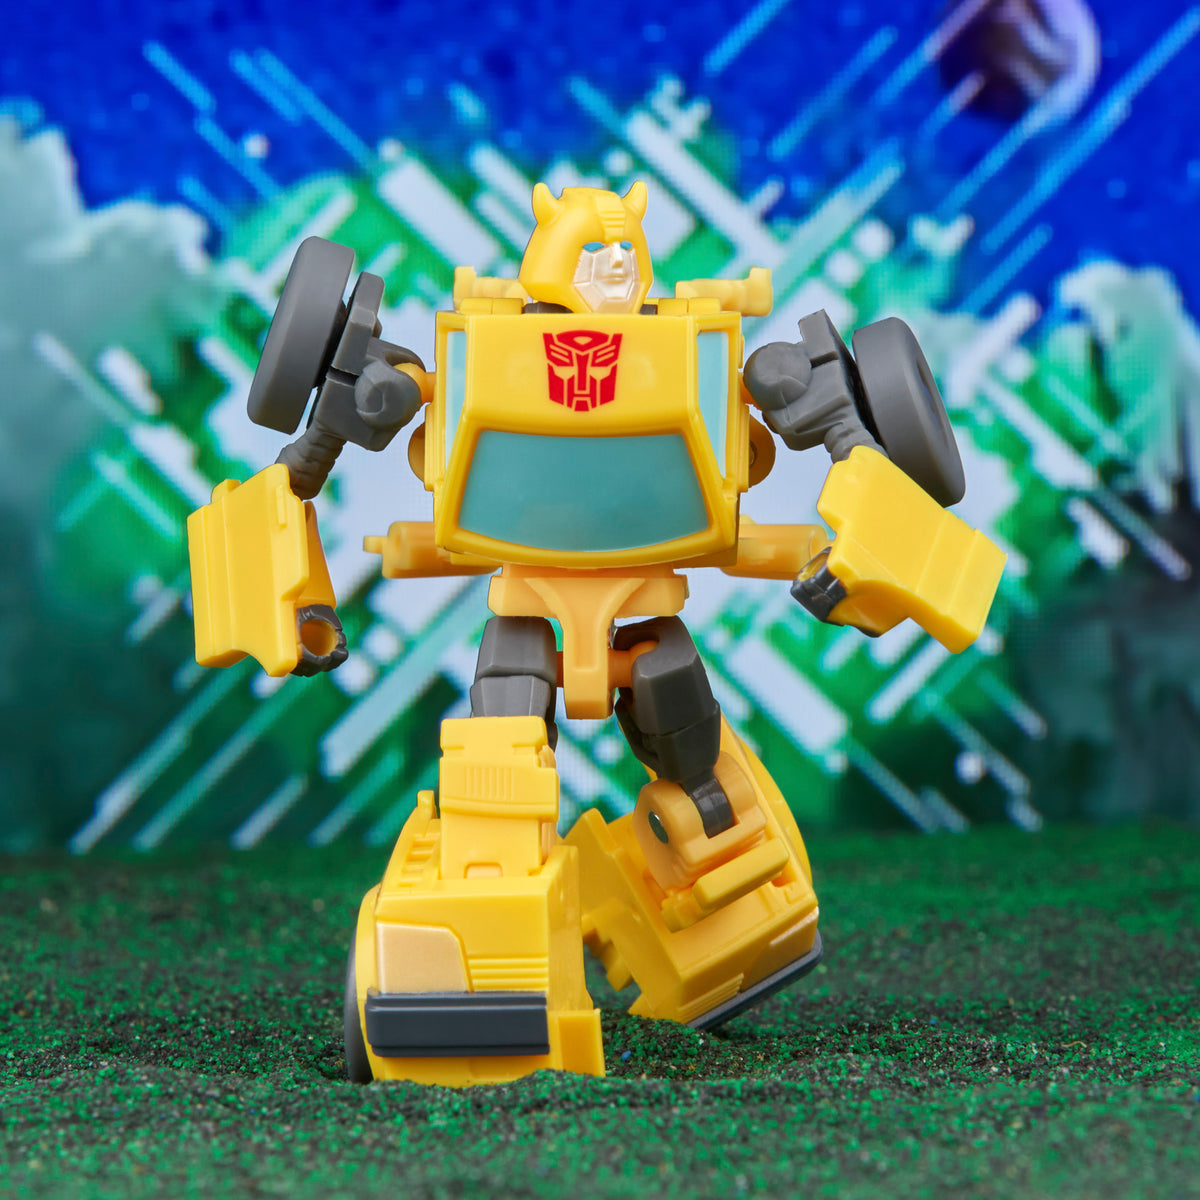 Lance-fléchettes NERF Transformers Elite 2.0 Bumblebee, 8 ans et